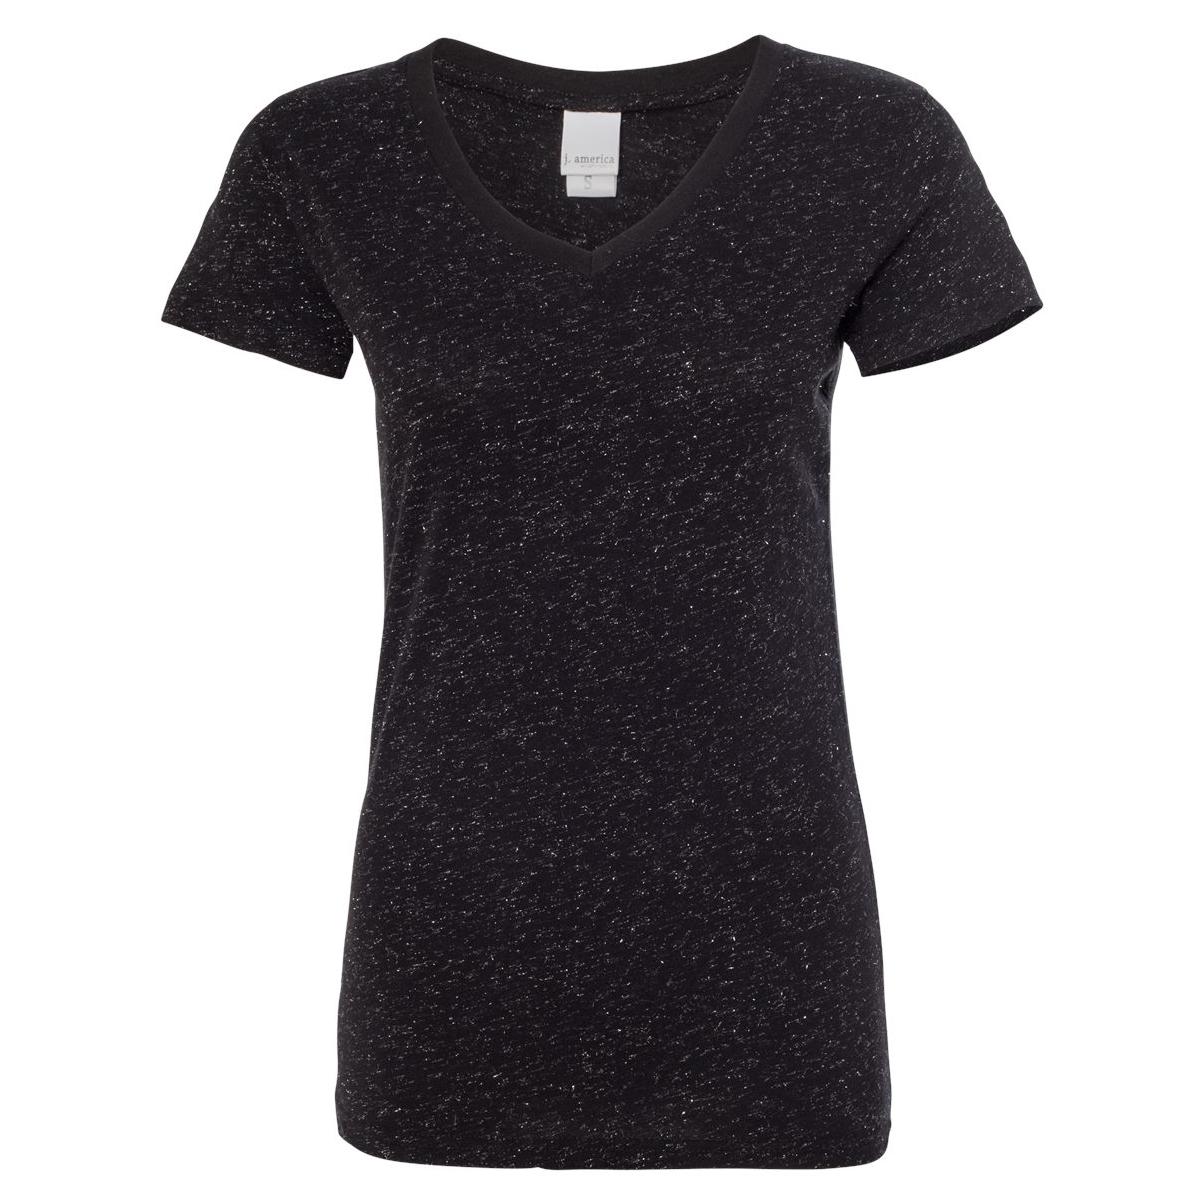 J. America 8136 Women's Glitter V-Neck Short Sleeve T-Shirt - Black ...